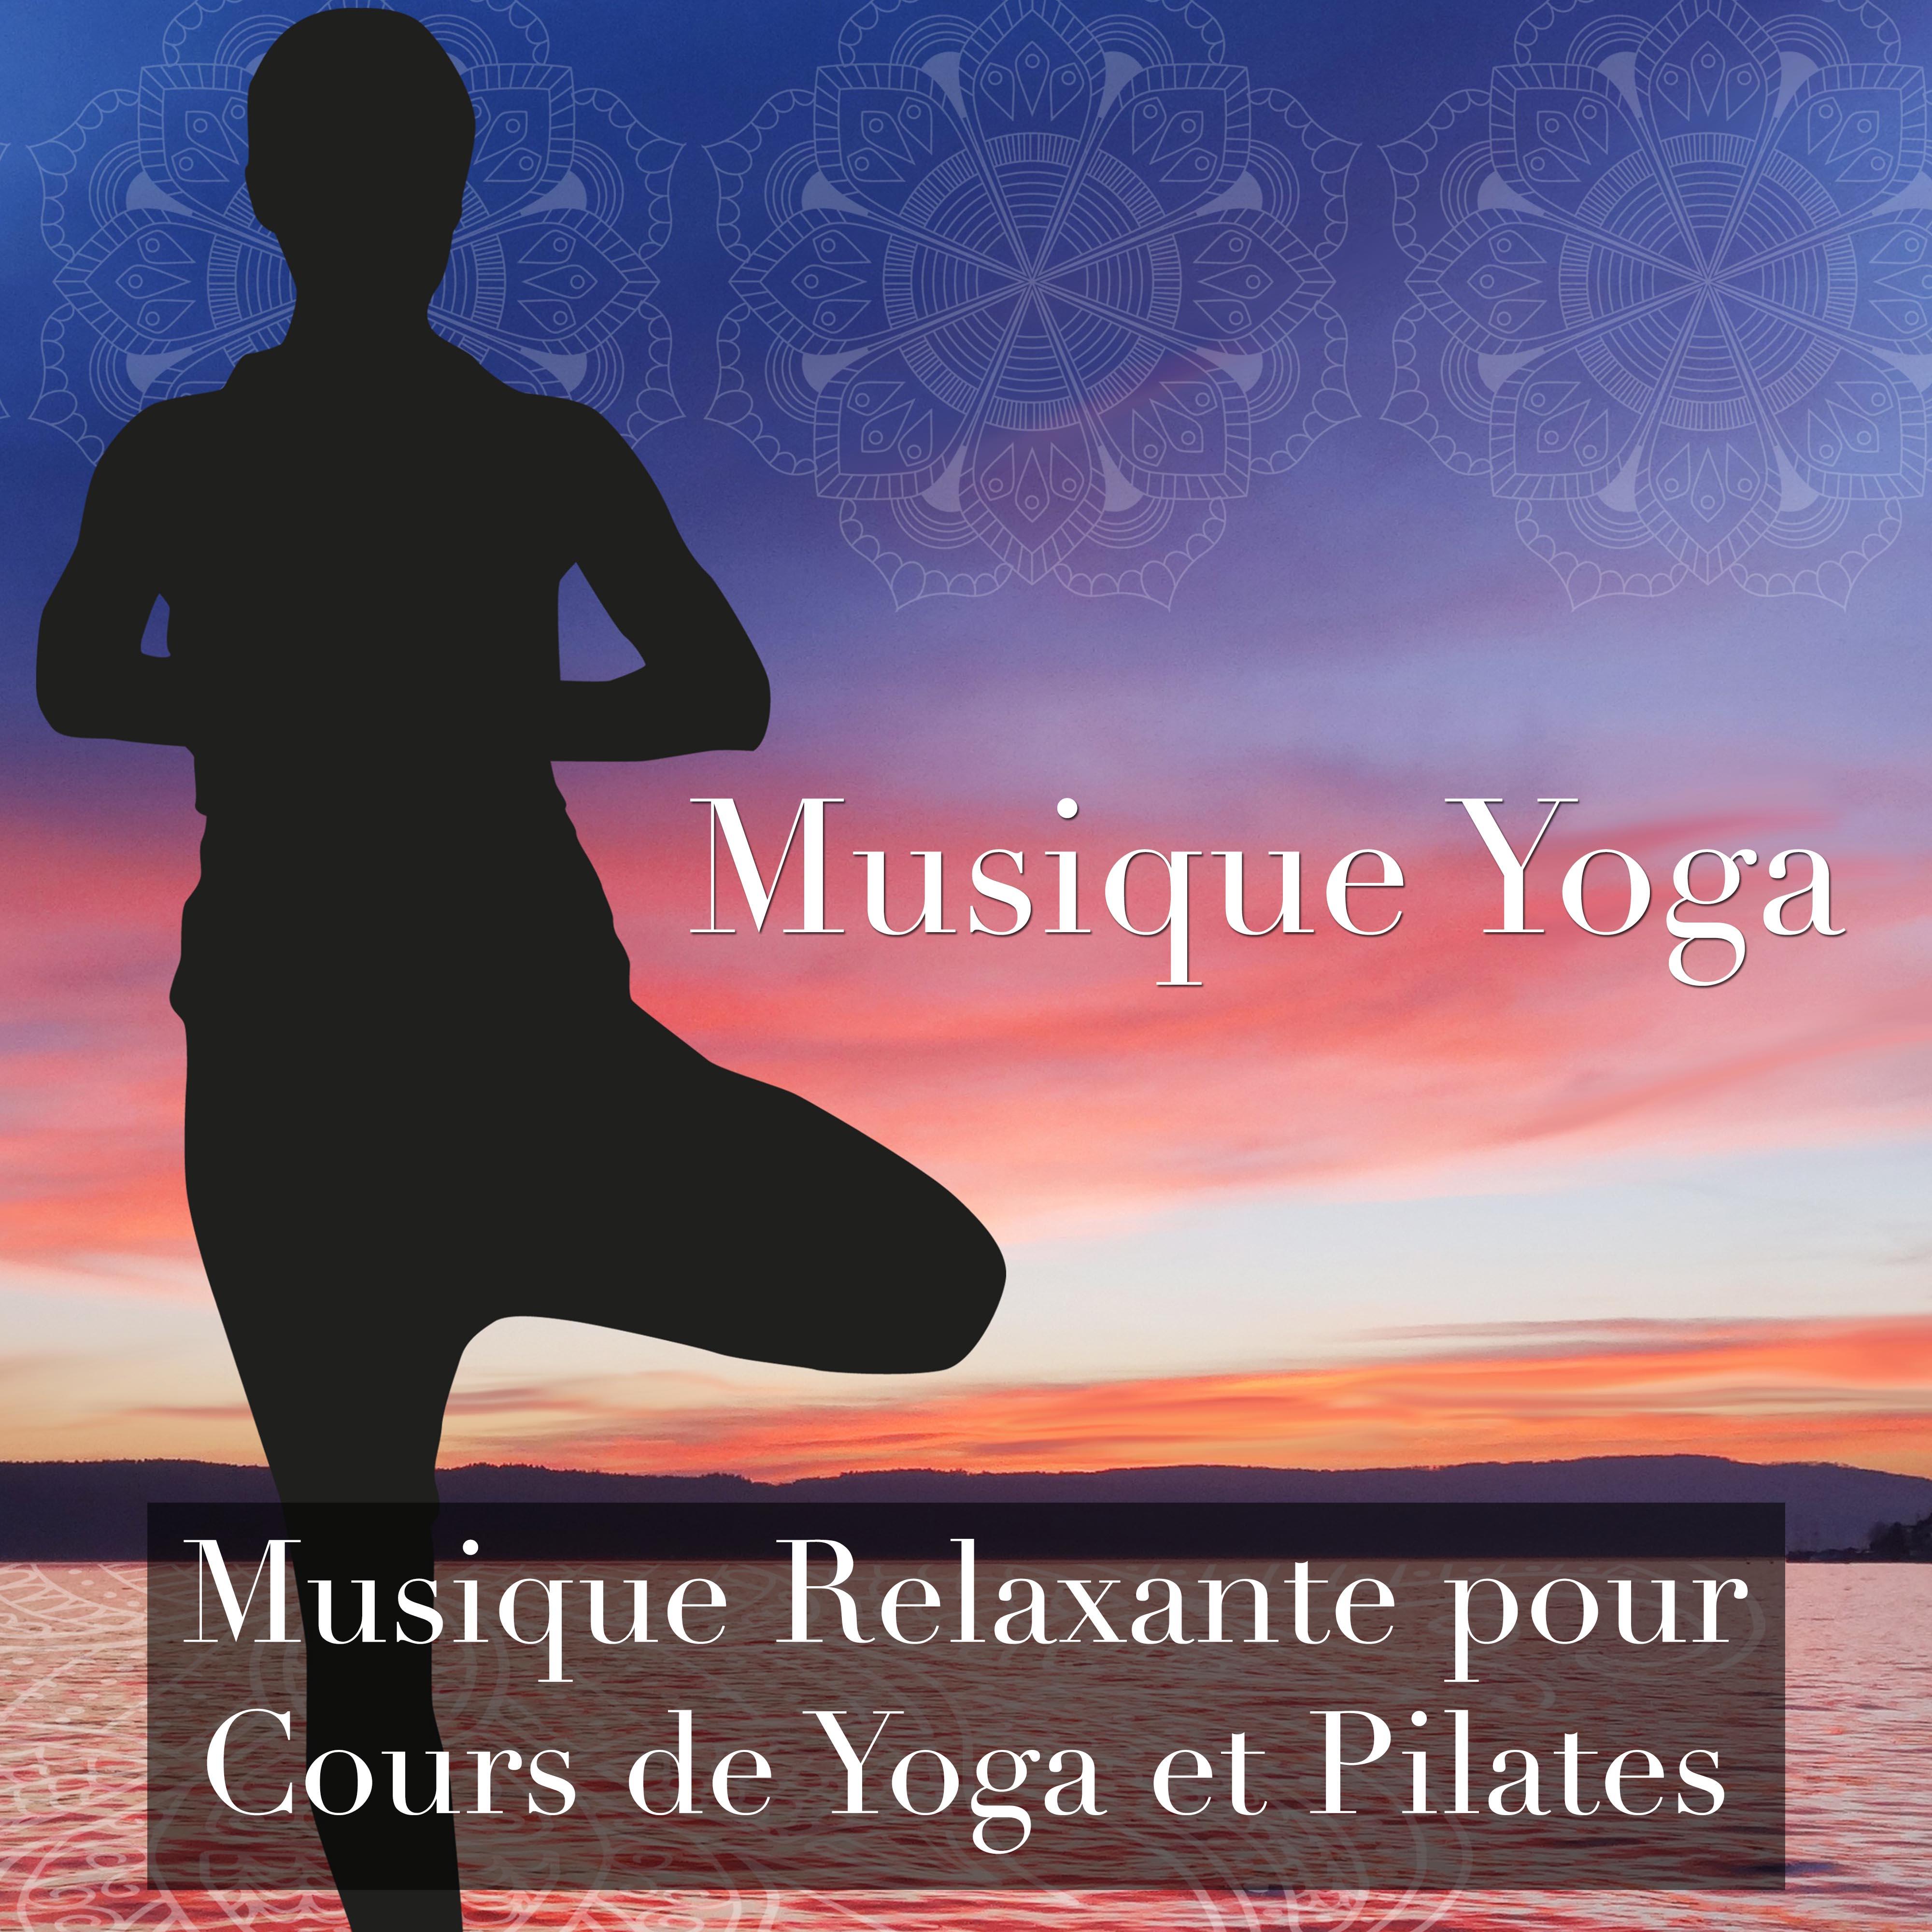 Musique Yoga: Musique Relaxante pour Cours de Yoga et Pilates